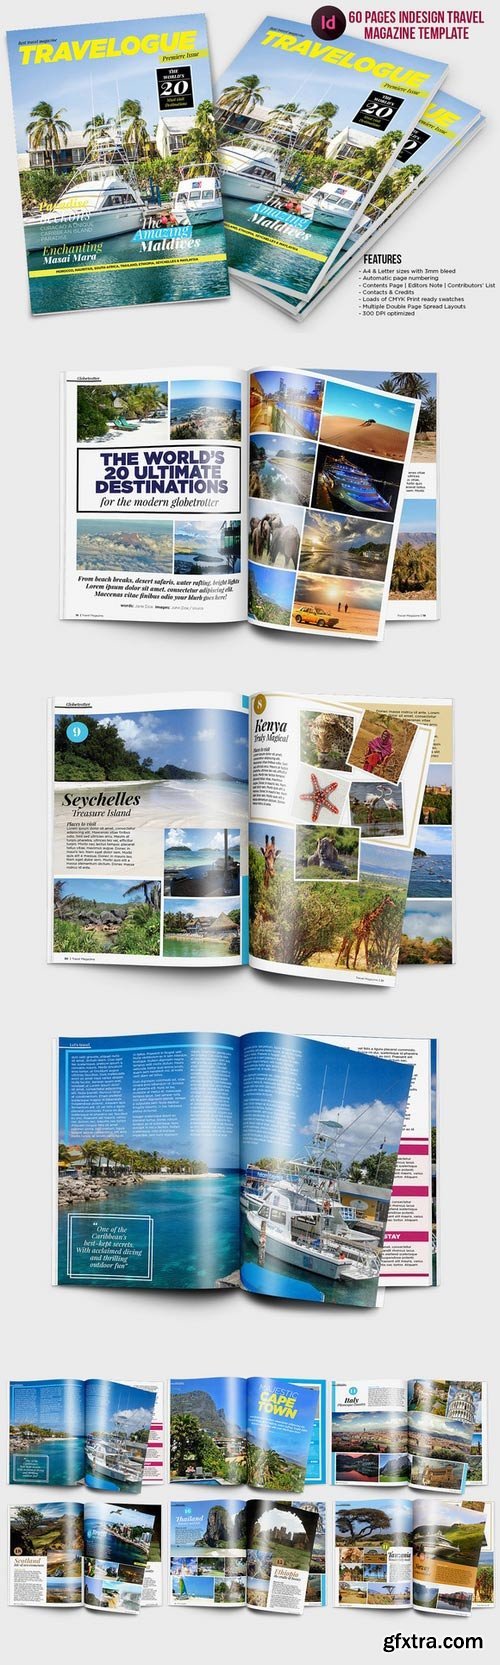 CM - Indesign Travel Magazine Template 497479